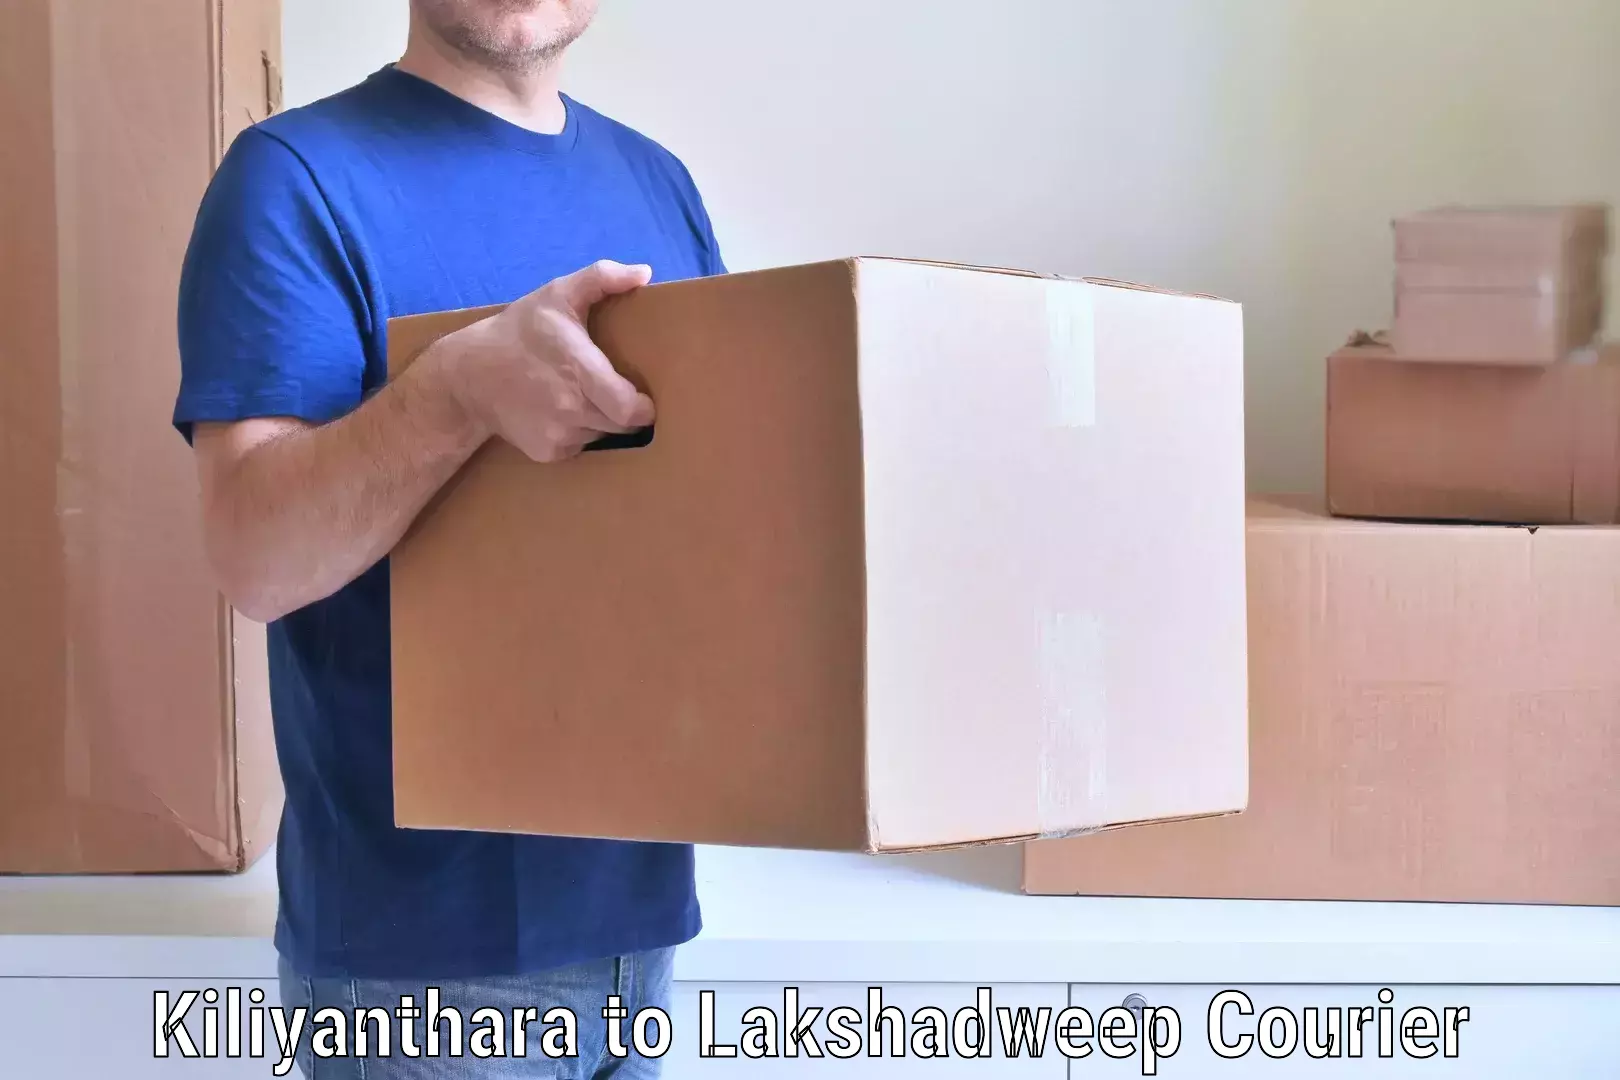 Trusted furniture movers Kiliyanthara to Lakshadweep